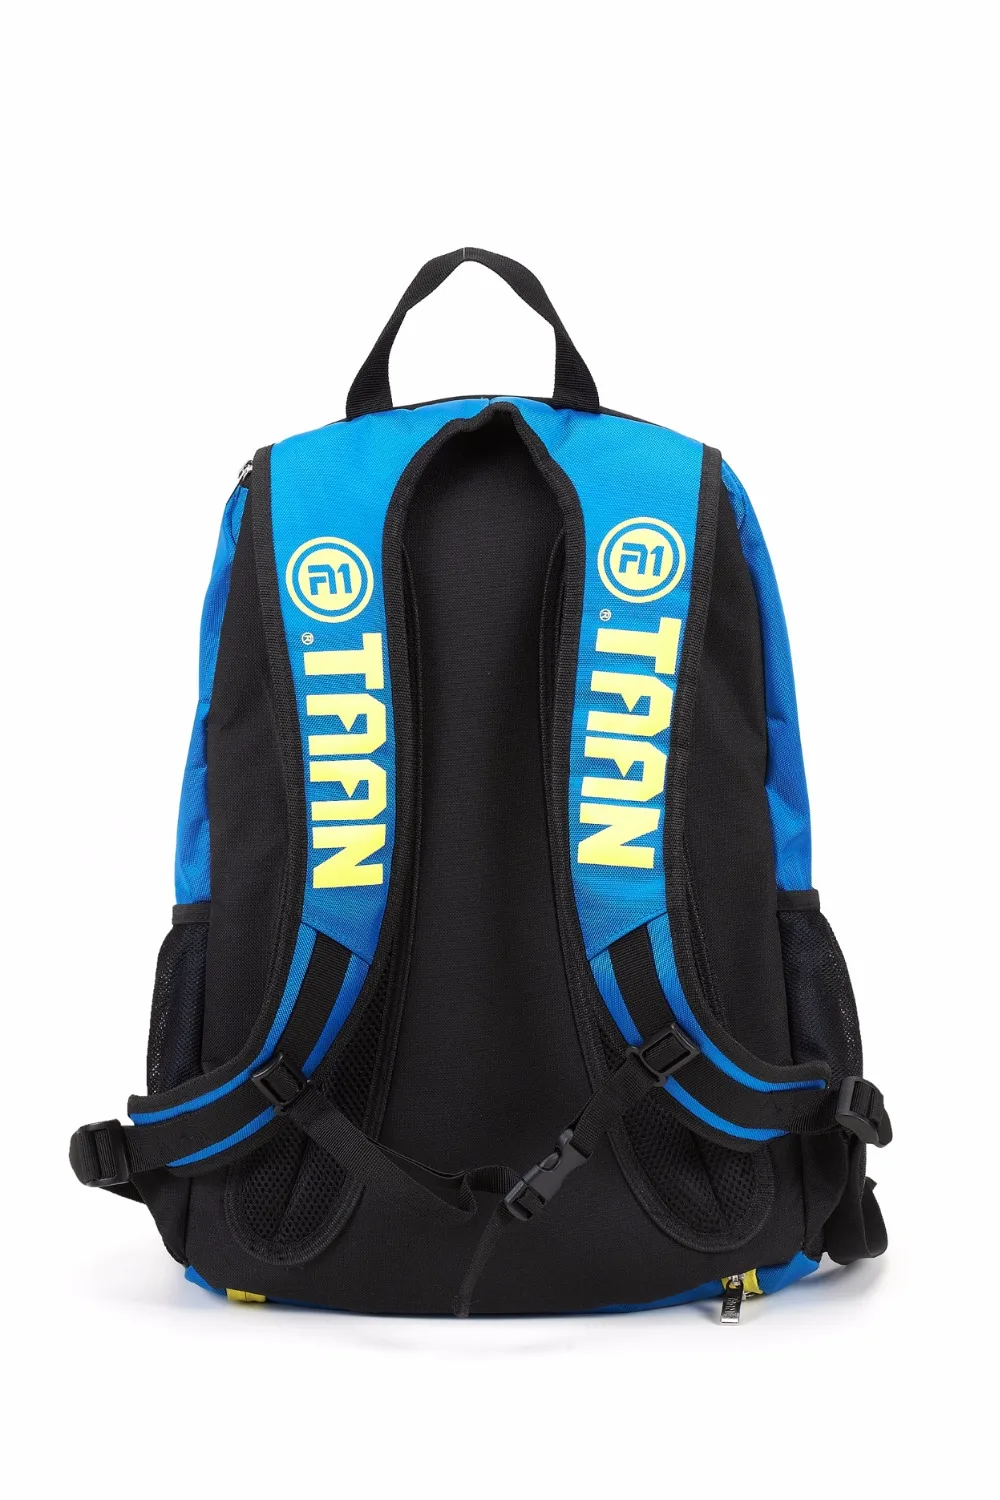 1 шт. спортивный рюкзак TAAN, сумка для бадминтона, теннисный рюкзак для ракеток 1009